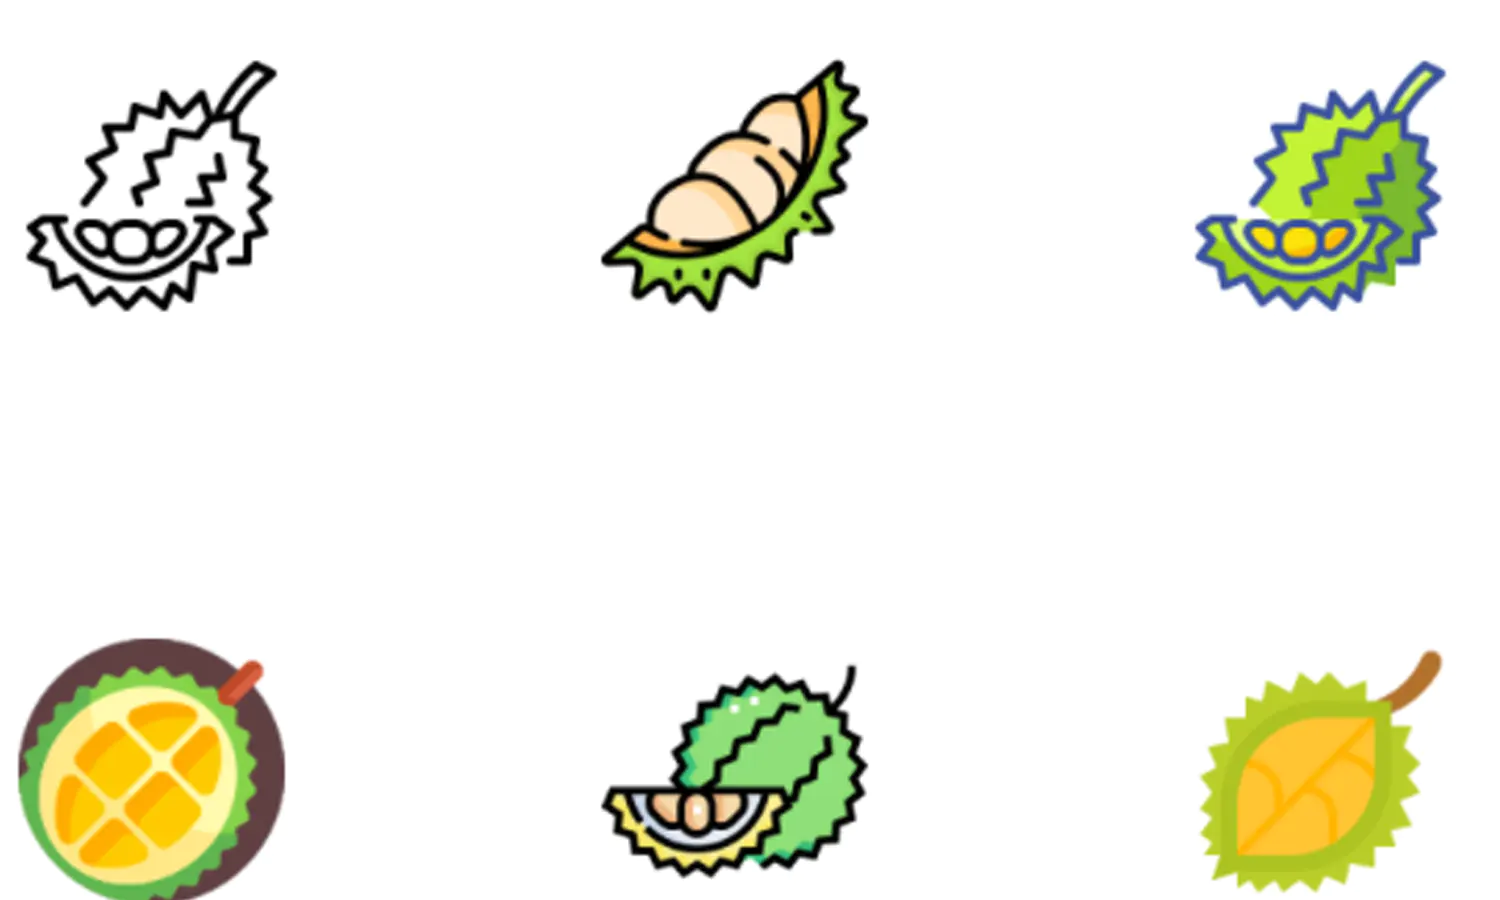 Emoji durian salin keyboard